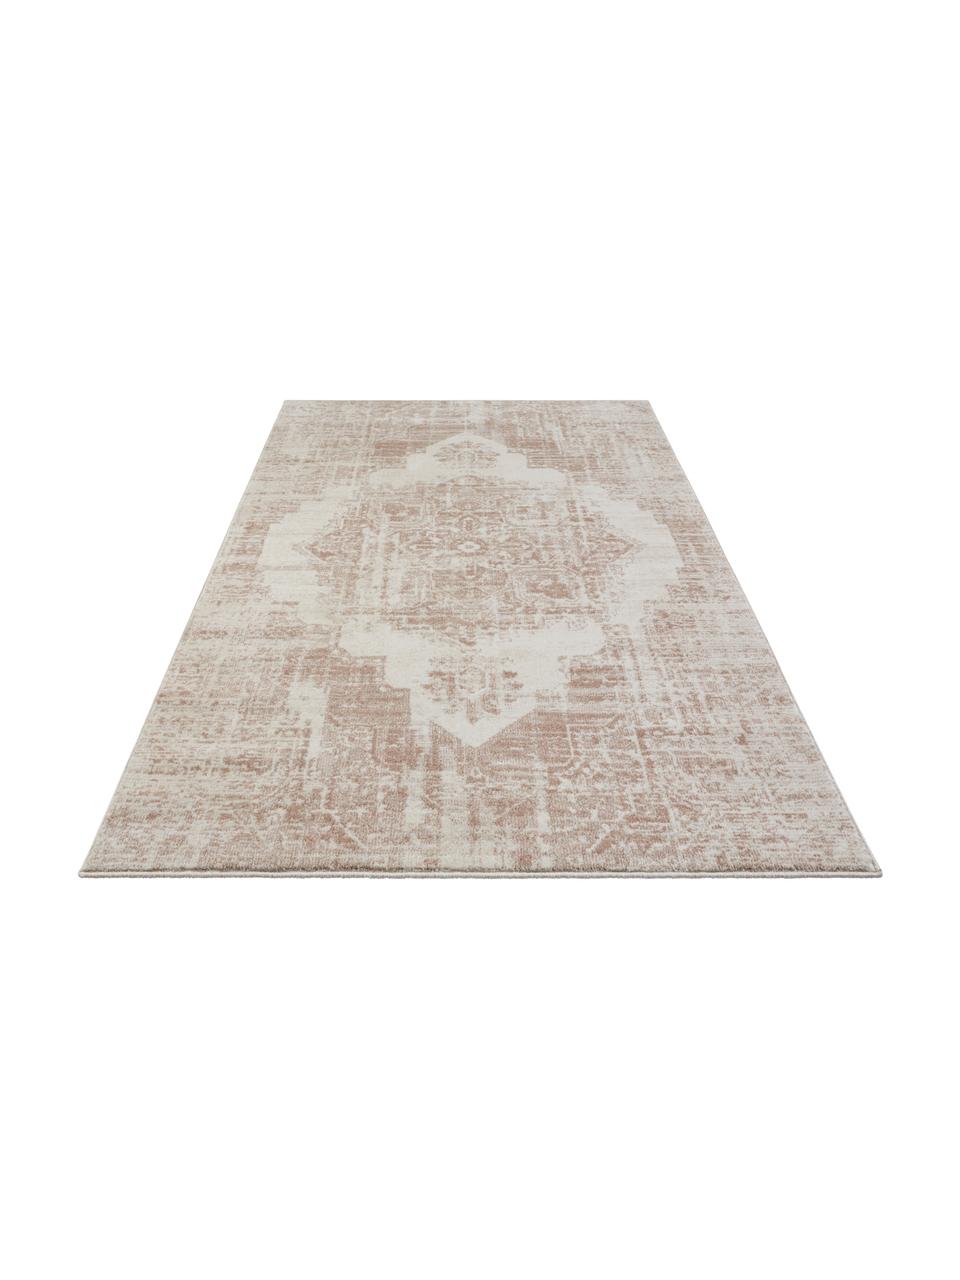 Teppich Garonne im Vintage Style, Flor: 100% Polypropylen, Kupferbraun, Beige, B 200 x L 290 cm (Grösse L)